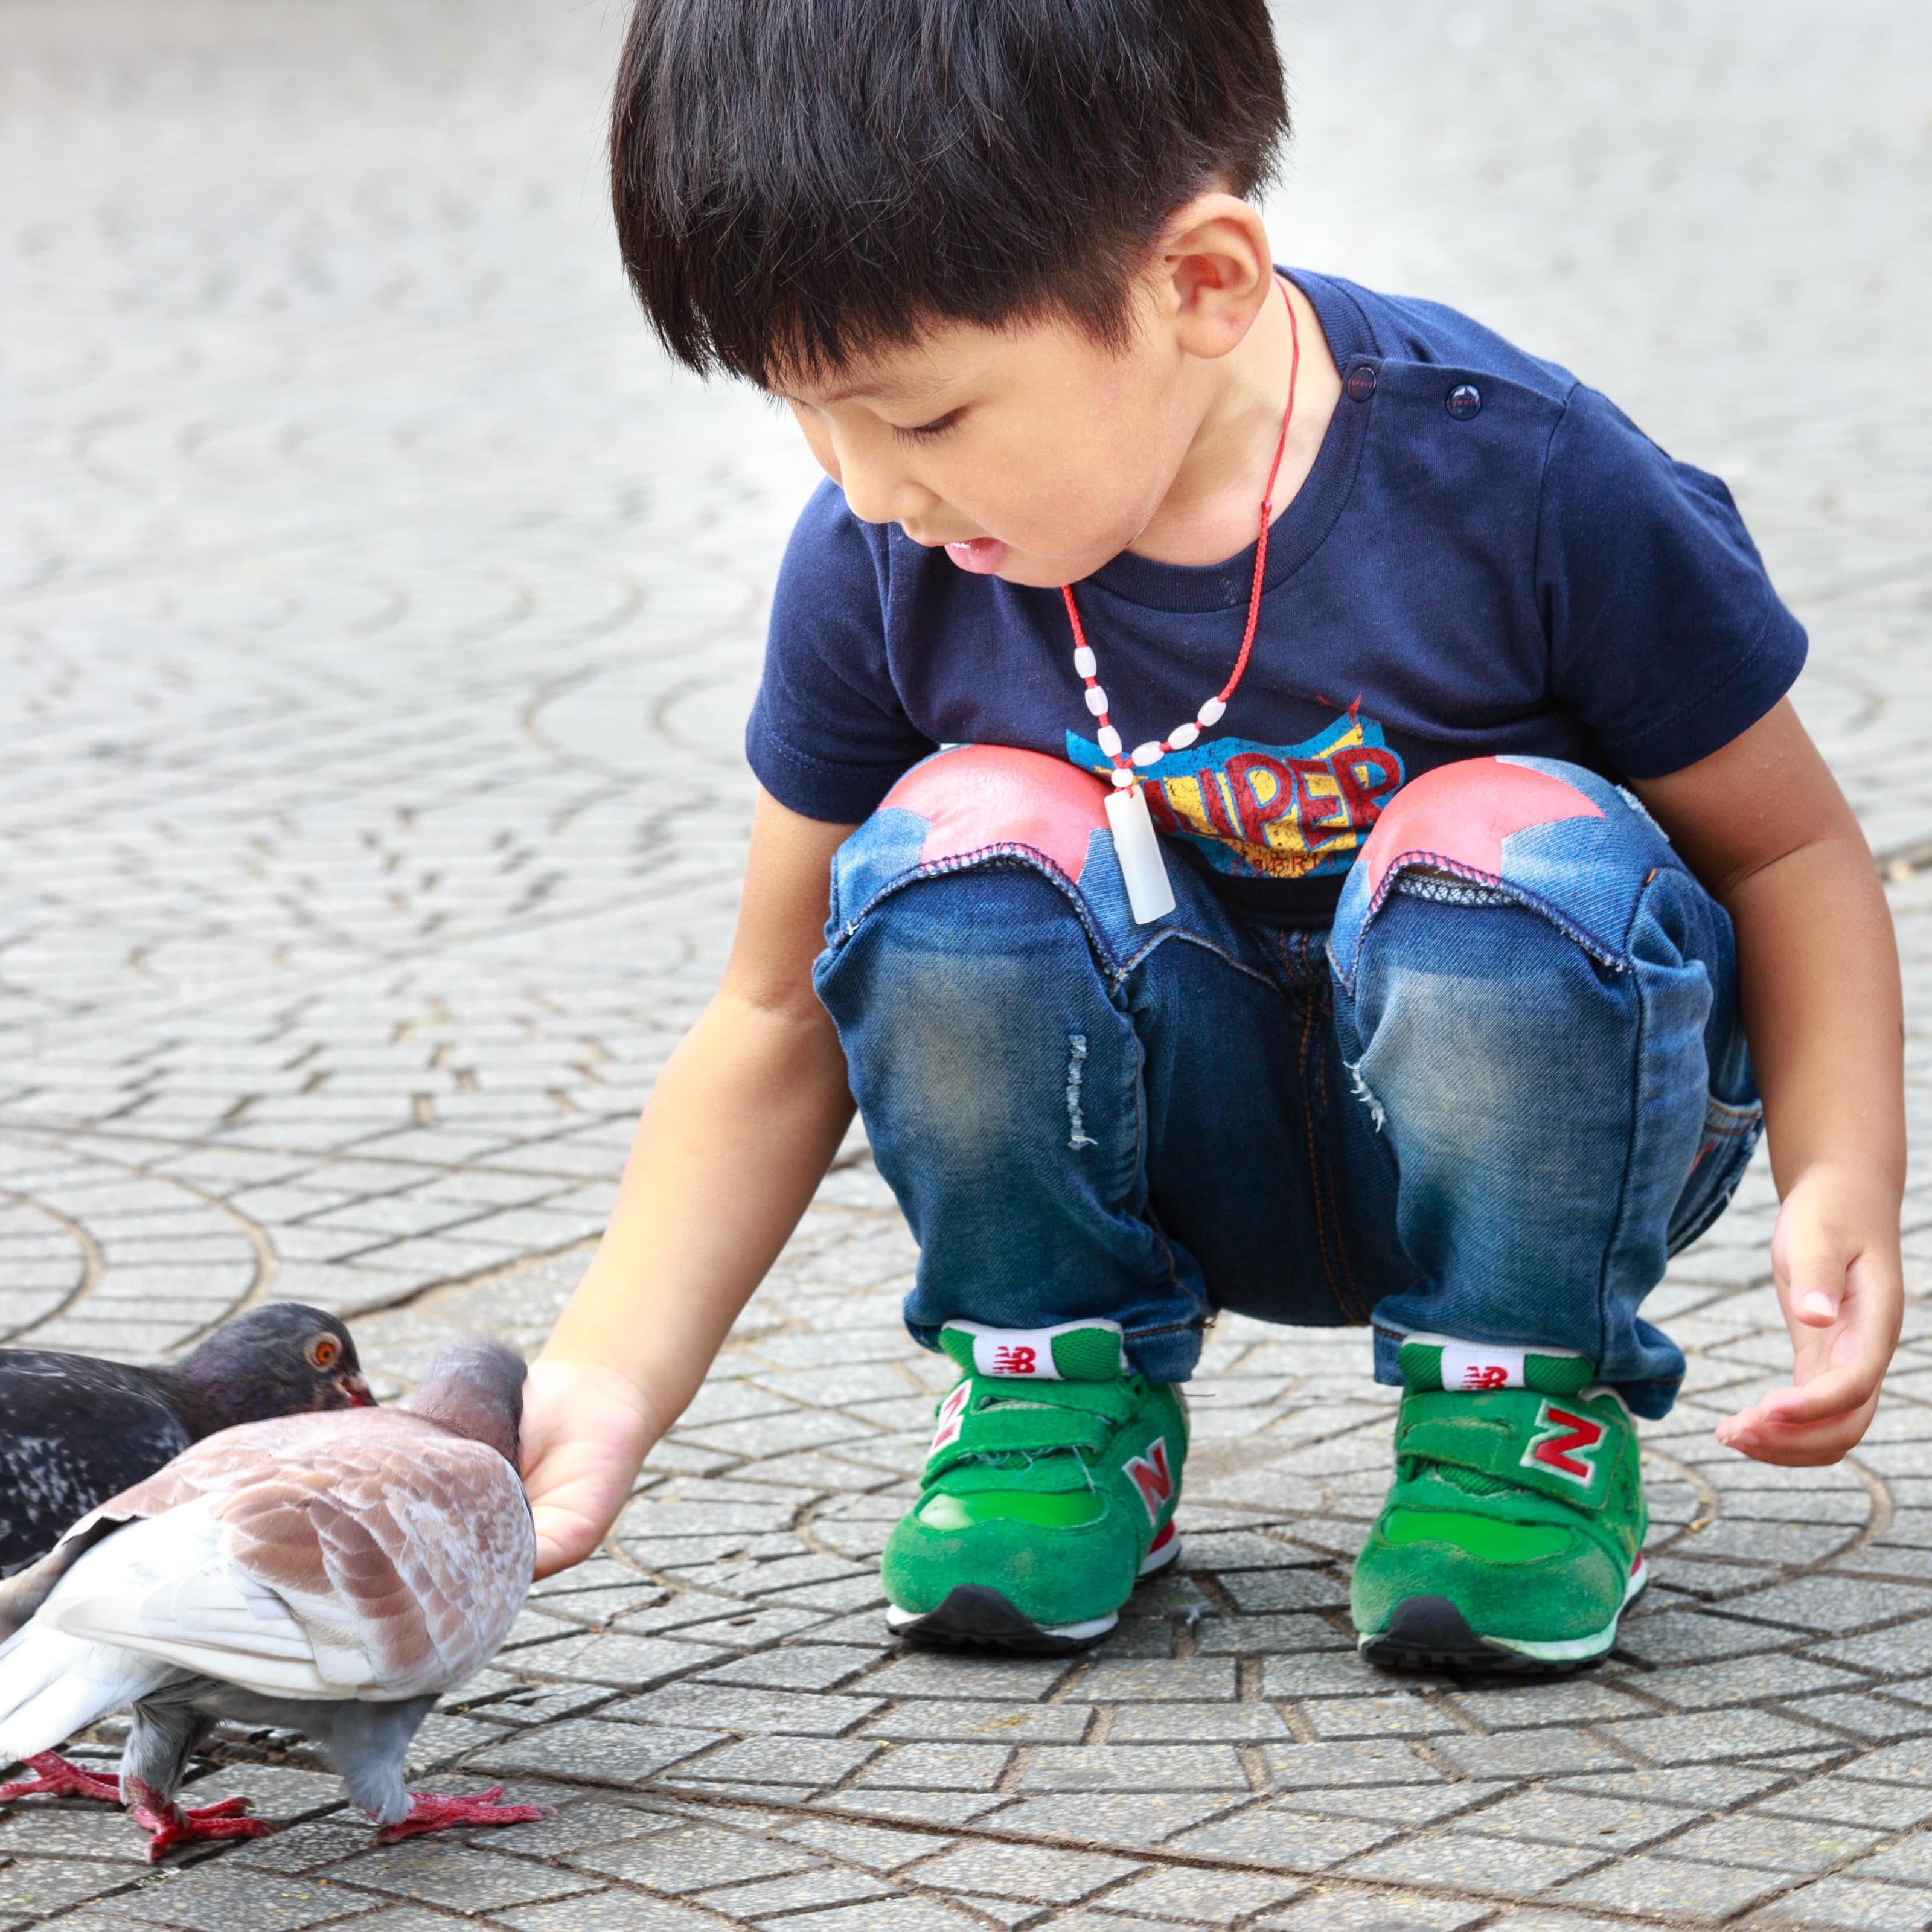 Ein Junge füttert Tauben.